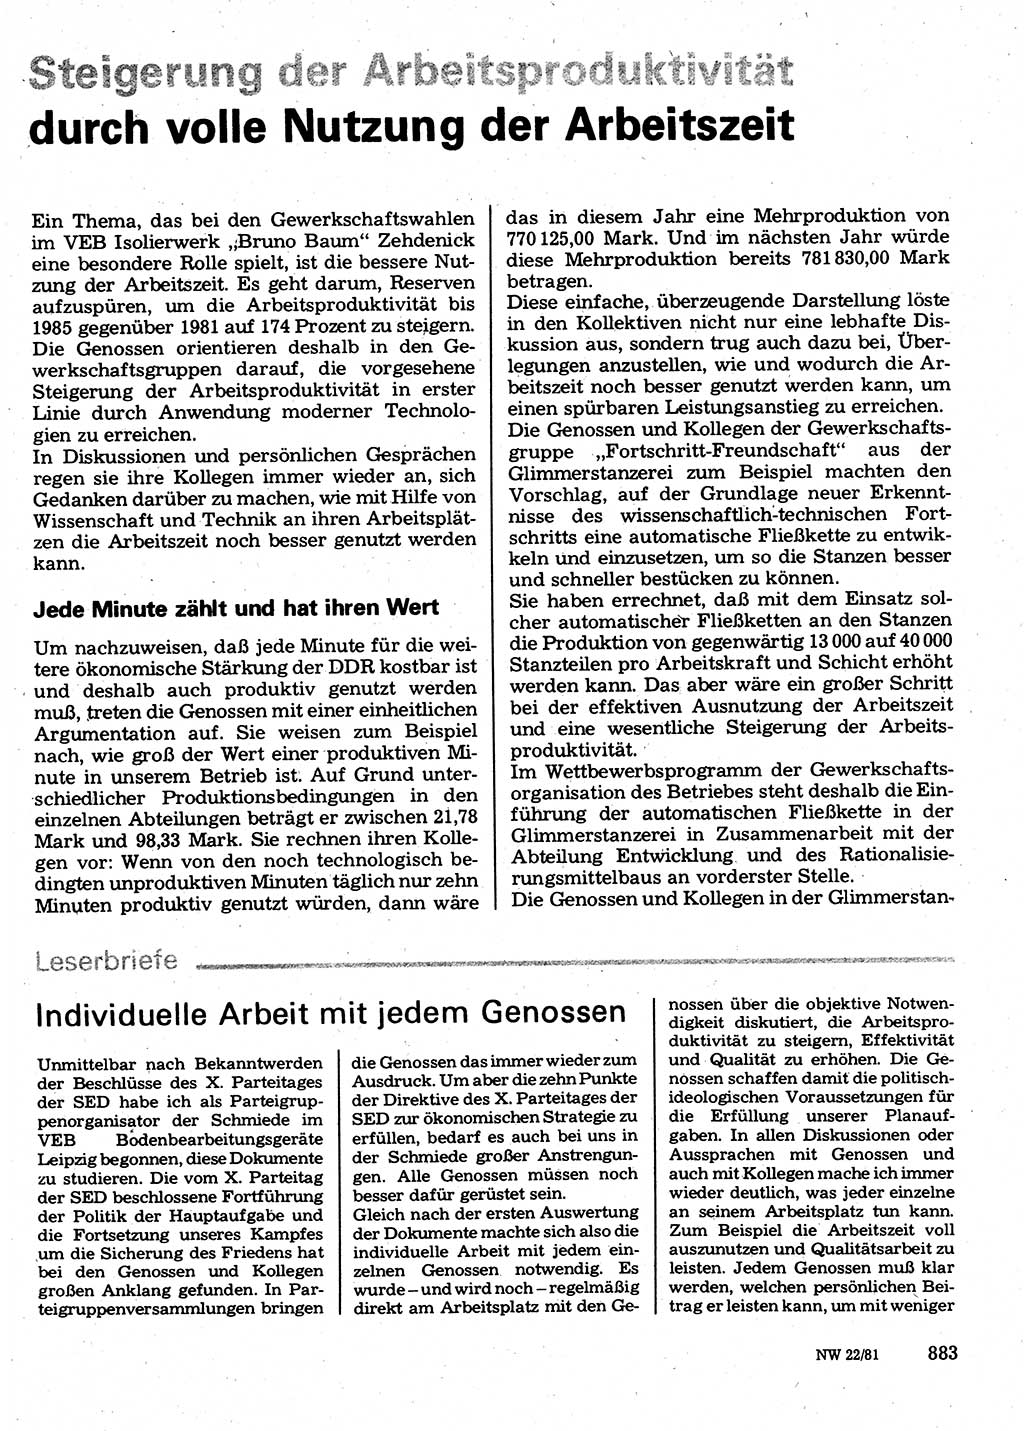 Neuer Weg (NW), Organ des Zentralkomitees (ZK) der SED (Sozialistische Einheitspartei Deutschlands) für Fragen des Parteilebens, 36. Jahrgang [Deutsche Demokratische Republik (DDR)] 1981, Seite 883 (NW ZK SED DDR 1981, S. 883)